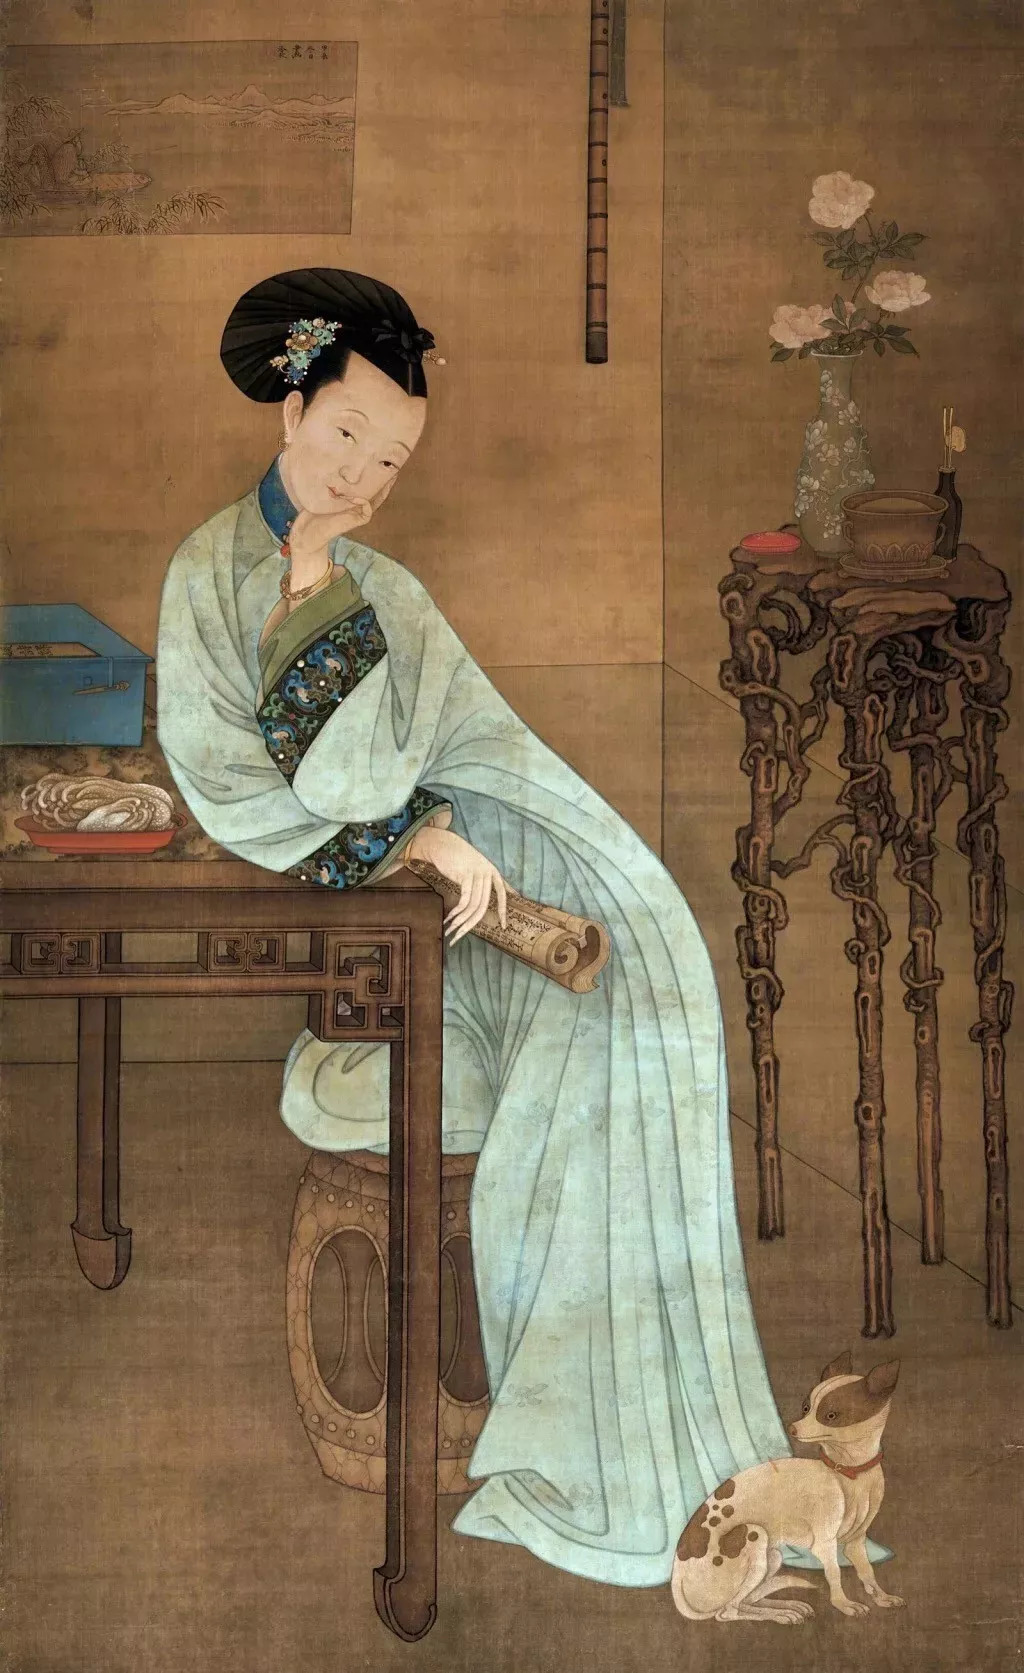 对于清朝画家,孙婷深爱冷枚的《春闺倦读图》和宫廷画师郎世宁的《午